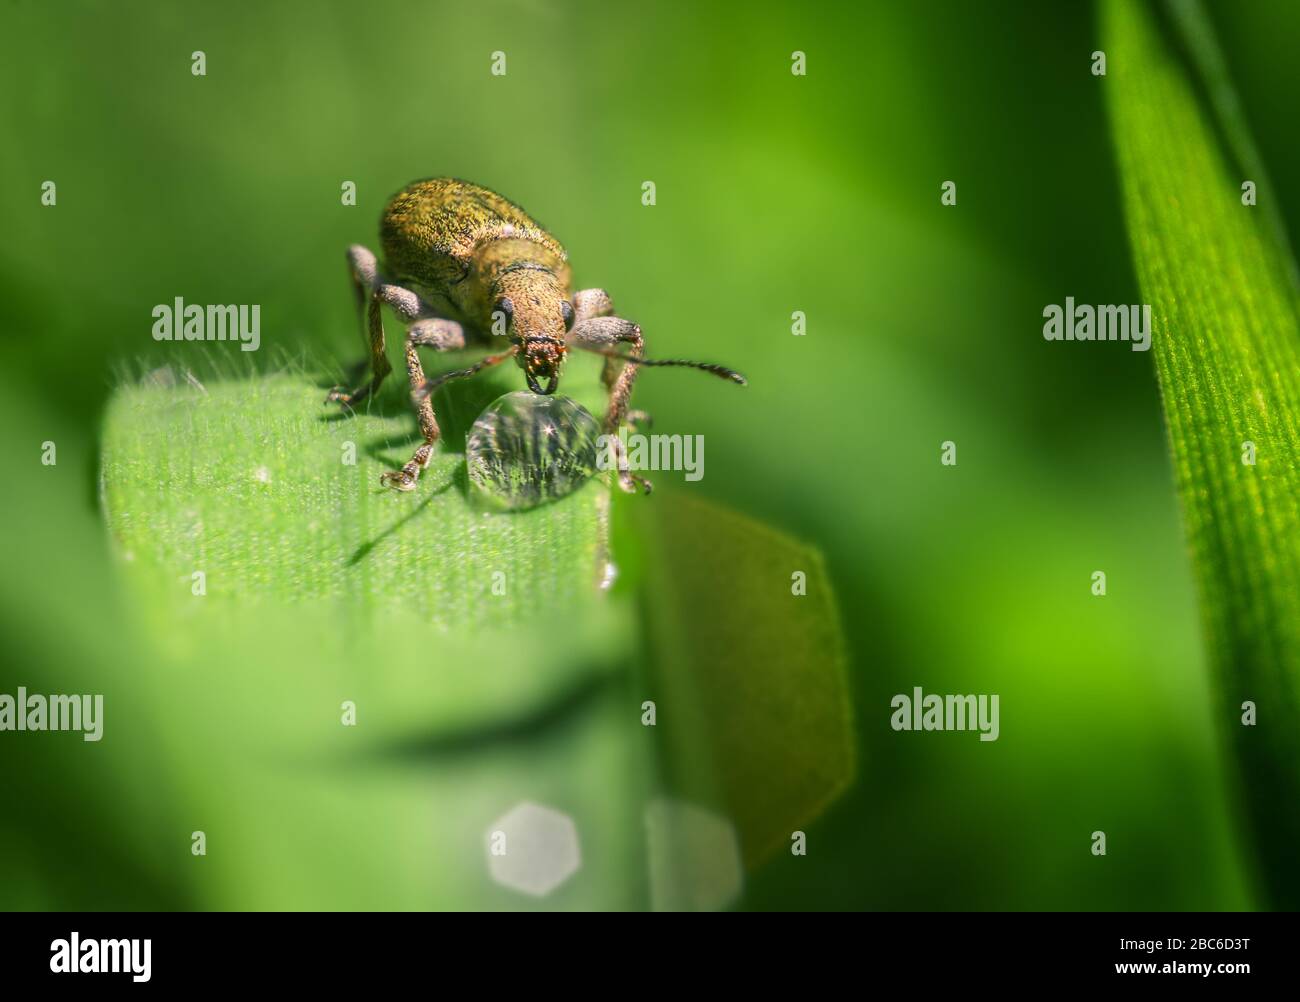 Un coleottero che beve da una goccia di acqua piovana appena caduta su una lama di erba verde Foto Stock